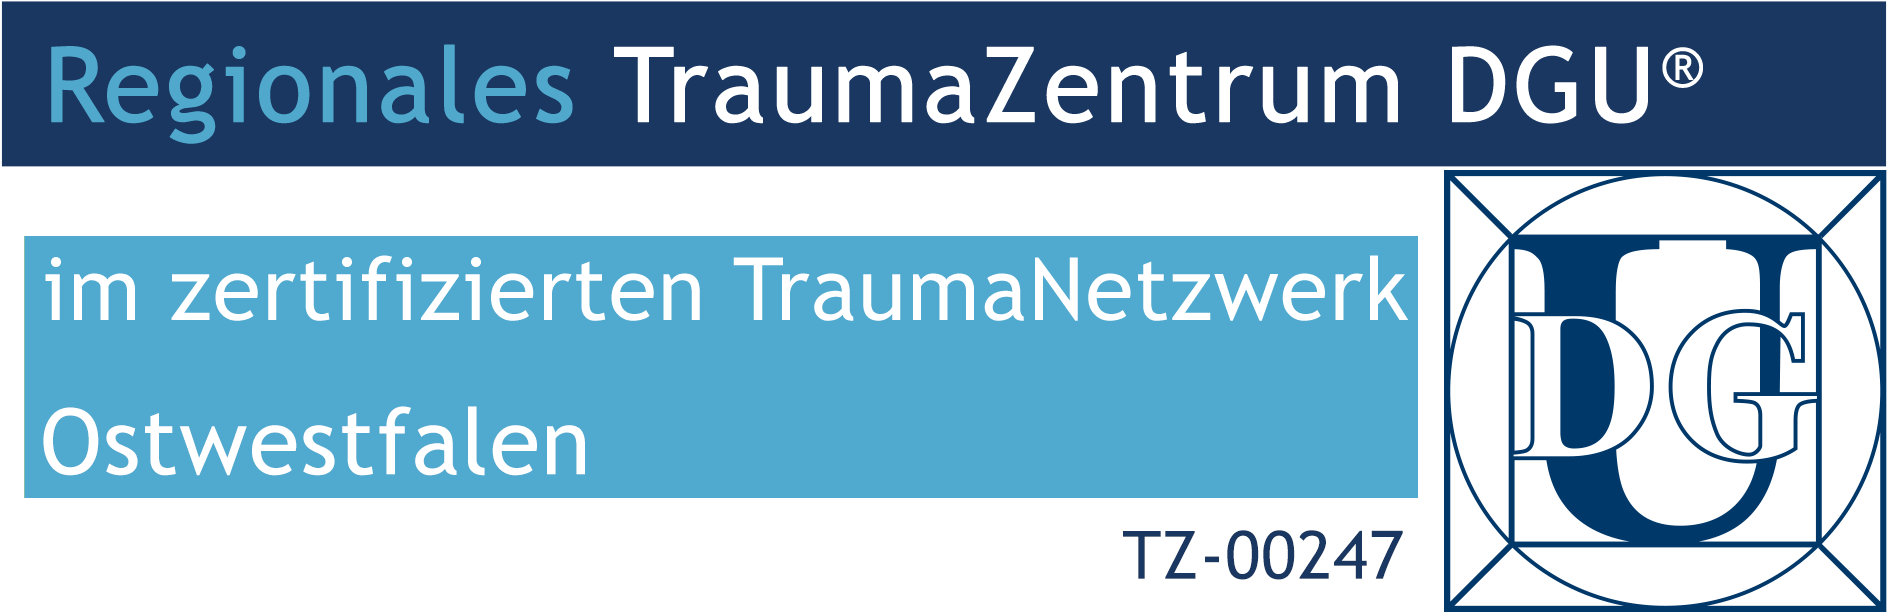 TZ-Logo_Klinikum_Herford_AoeR_TZ-00247.png